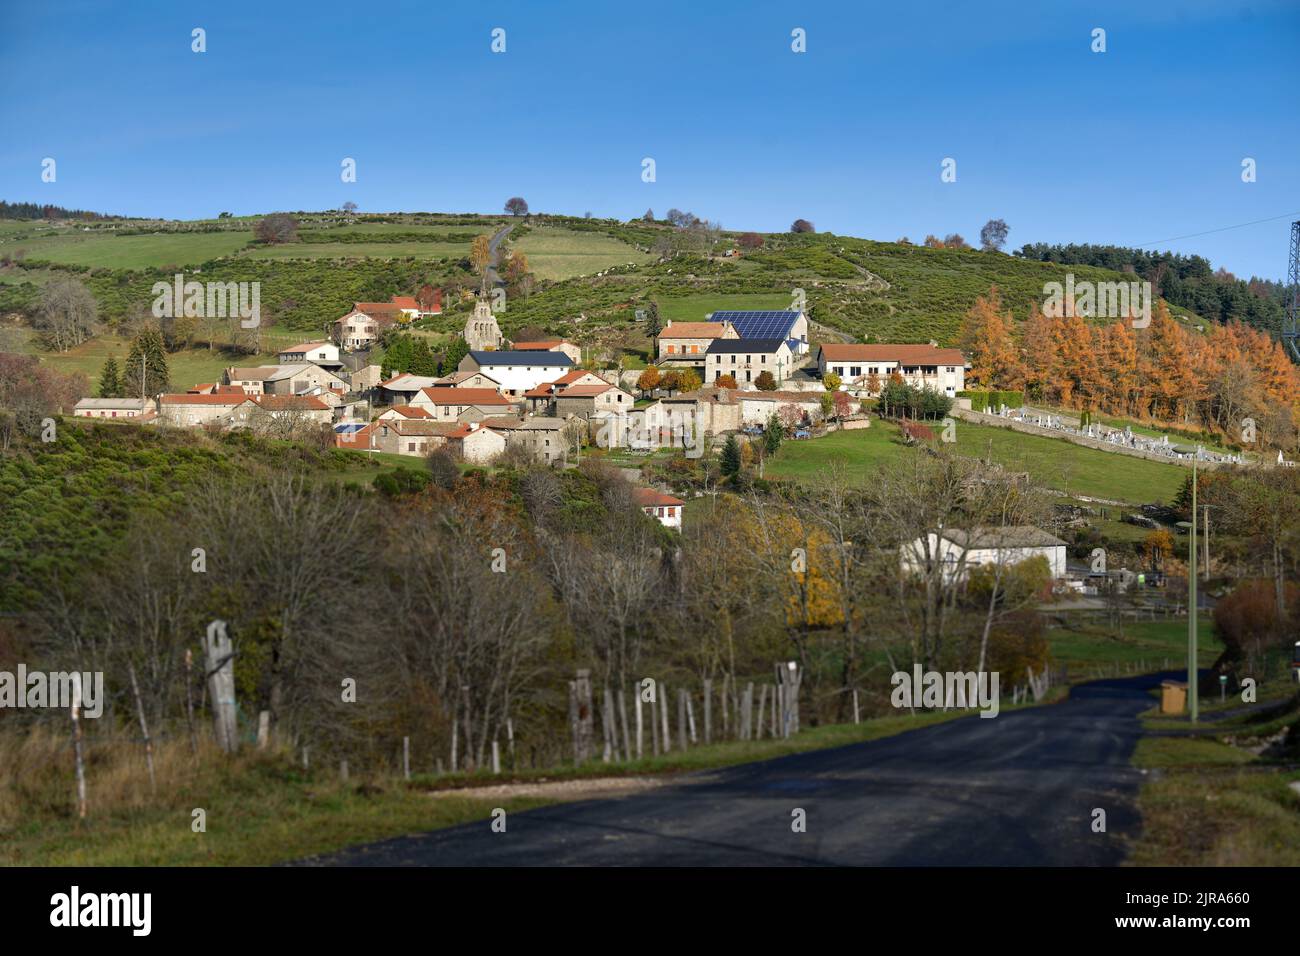 Chanaleilles (Südfrankreich): Gesamtansicht des Dorfes. Häuser und Gebäude mit Photovoltaik-Paneelen auf dem Dach Stockfoto